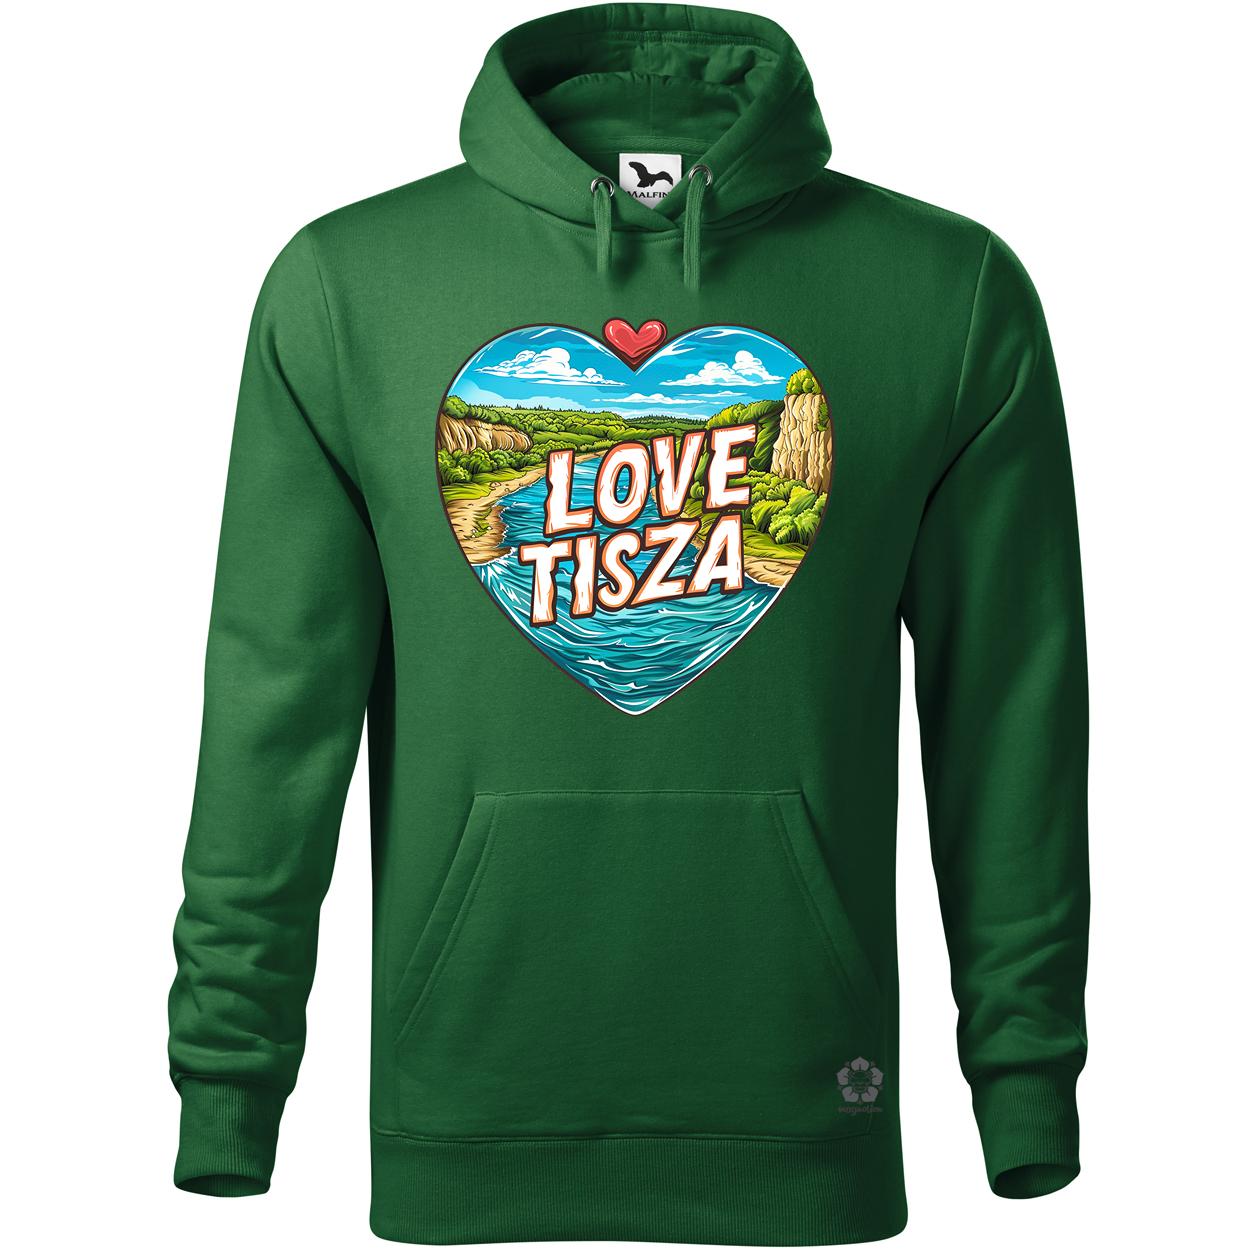 Love Tisza v8